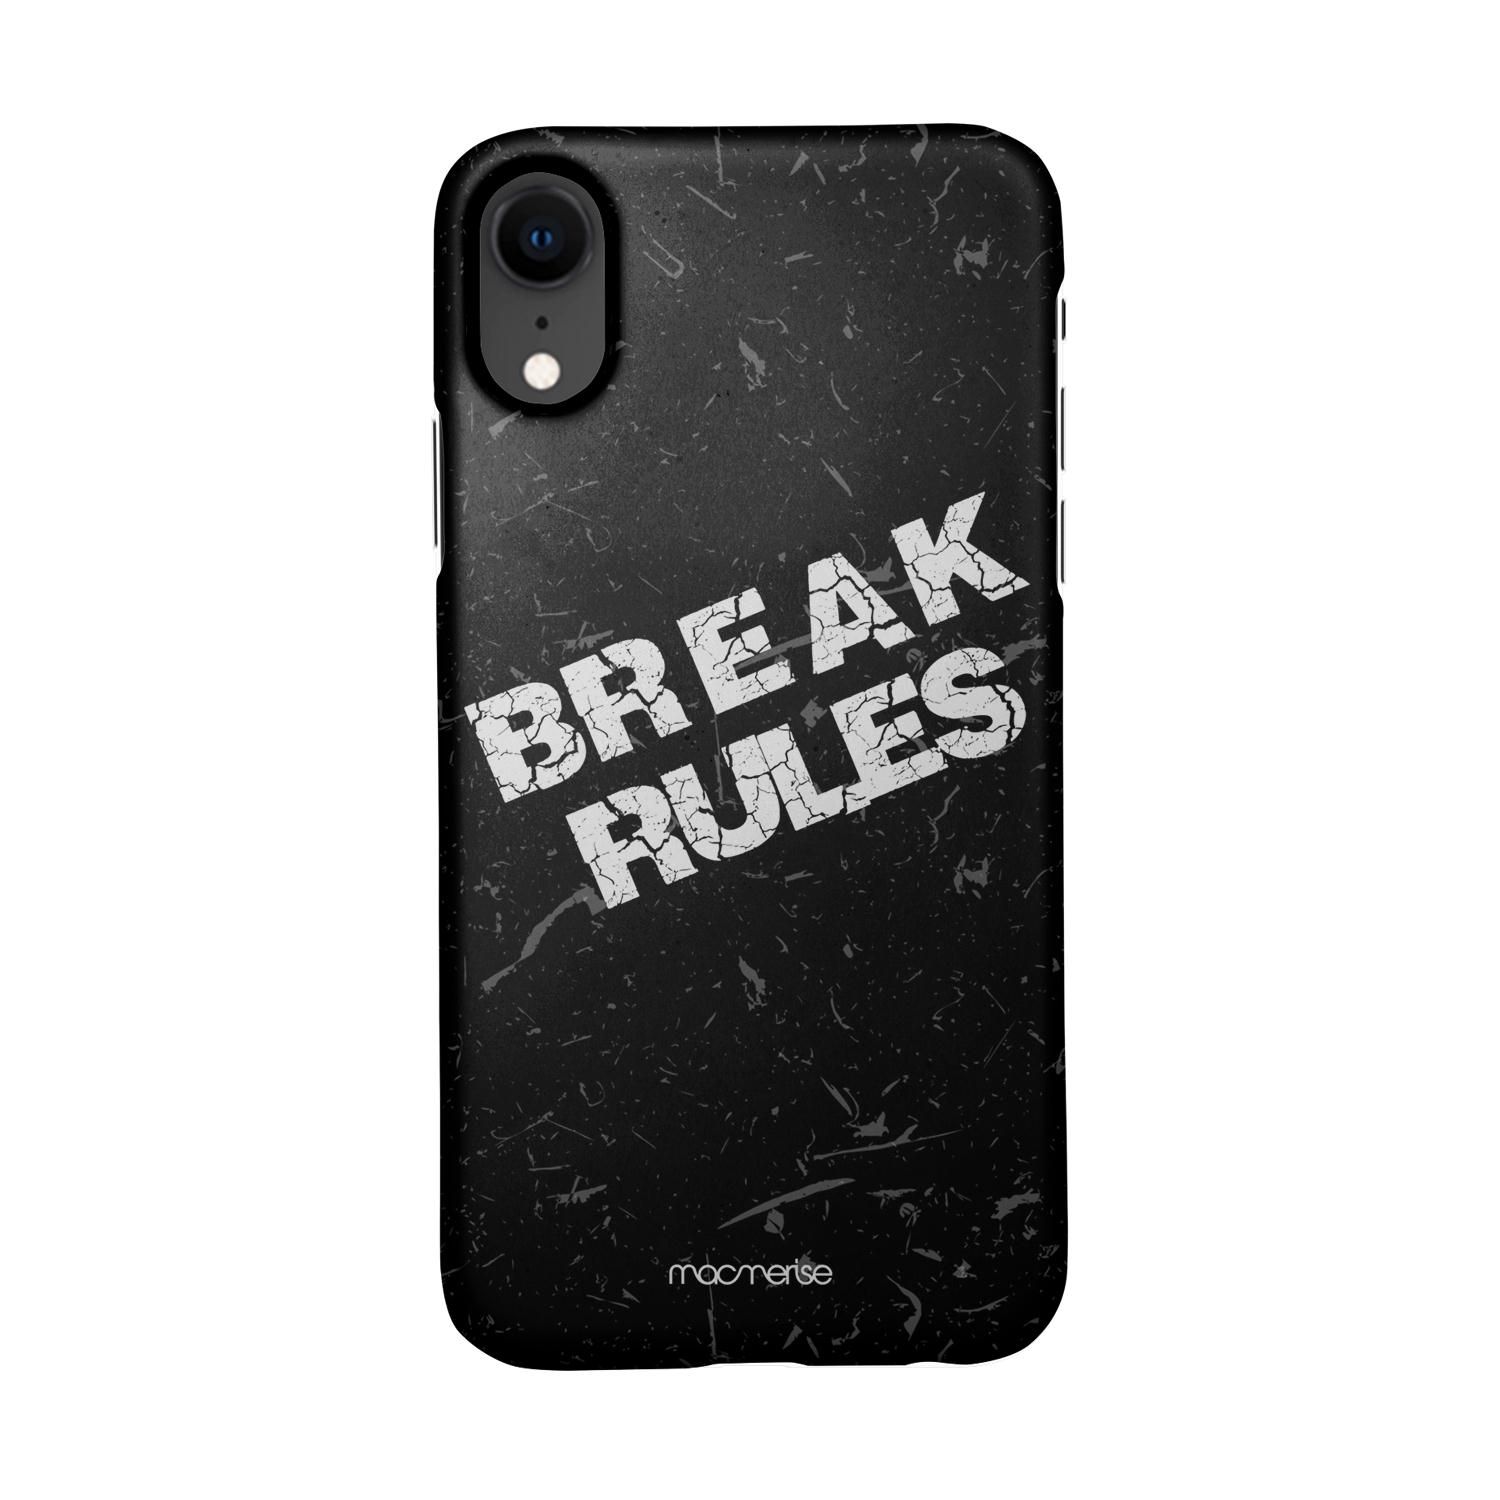 Buy Break Rules - Sleek Phone Case for iPhone XR Online